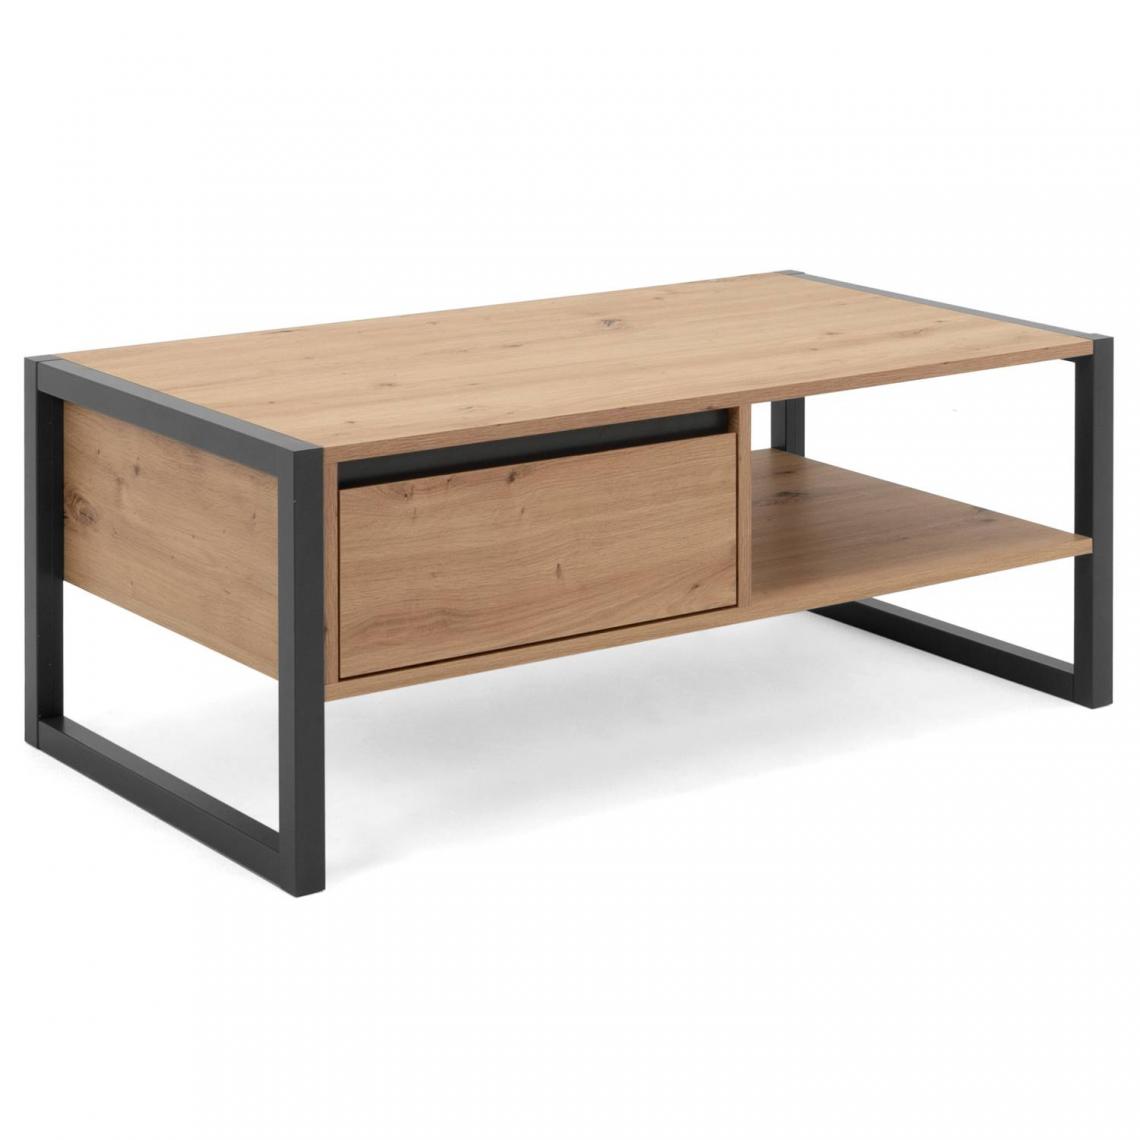 Pegane - Table basse en bois coloris naturel / anthracite - Longueur 100 x Hauteur 40 x Profondeur 55 cm - Tables basses